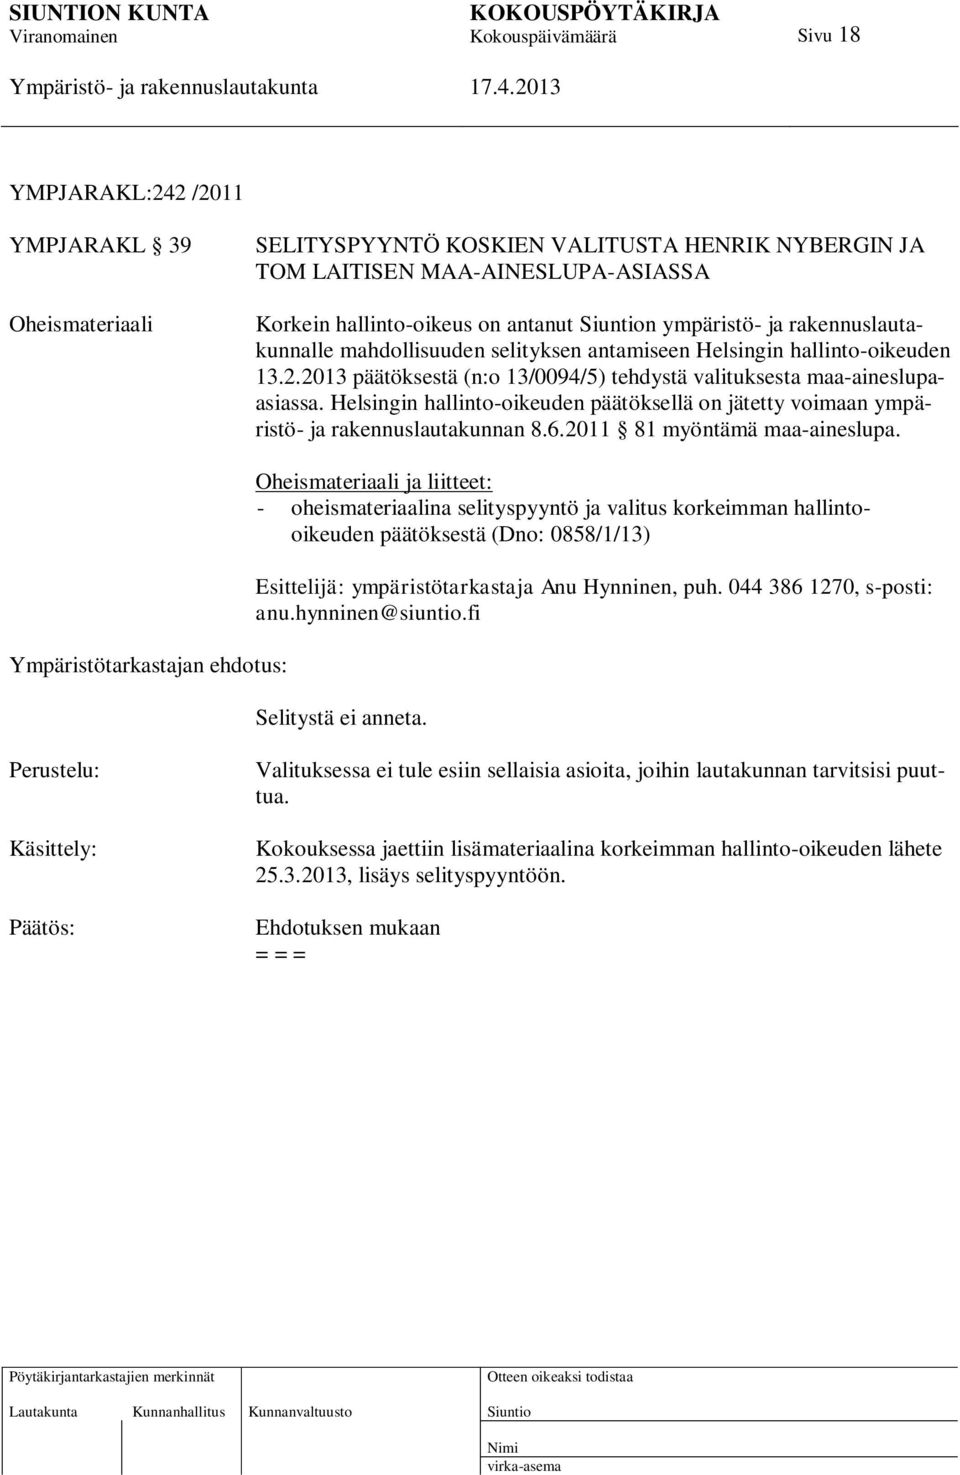 Helsingin hallinto-oikeuden päätöksellä on jätetty voimaan ympäristö- ja rakennuslautakunnan 8.6.2011 81 myöntämä maa-aineslupa.